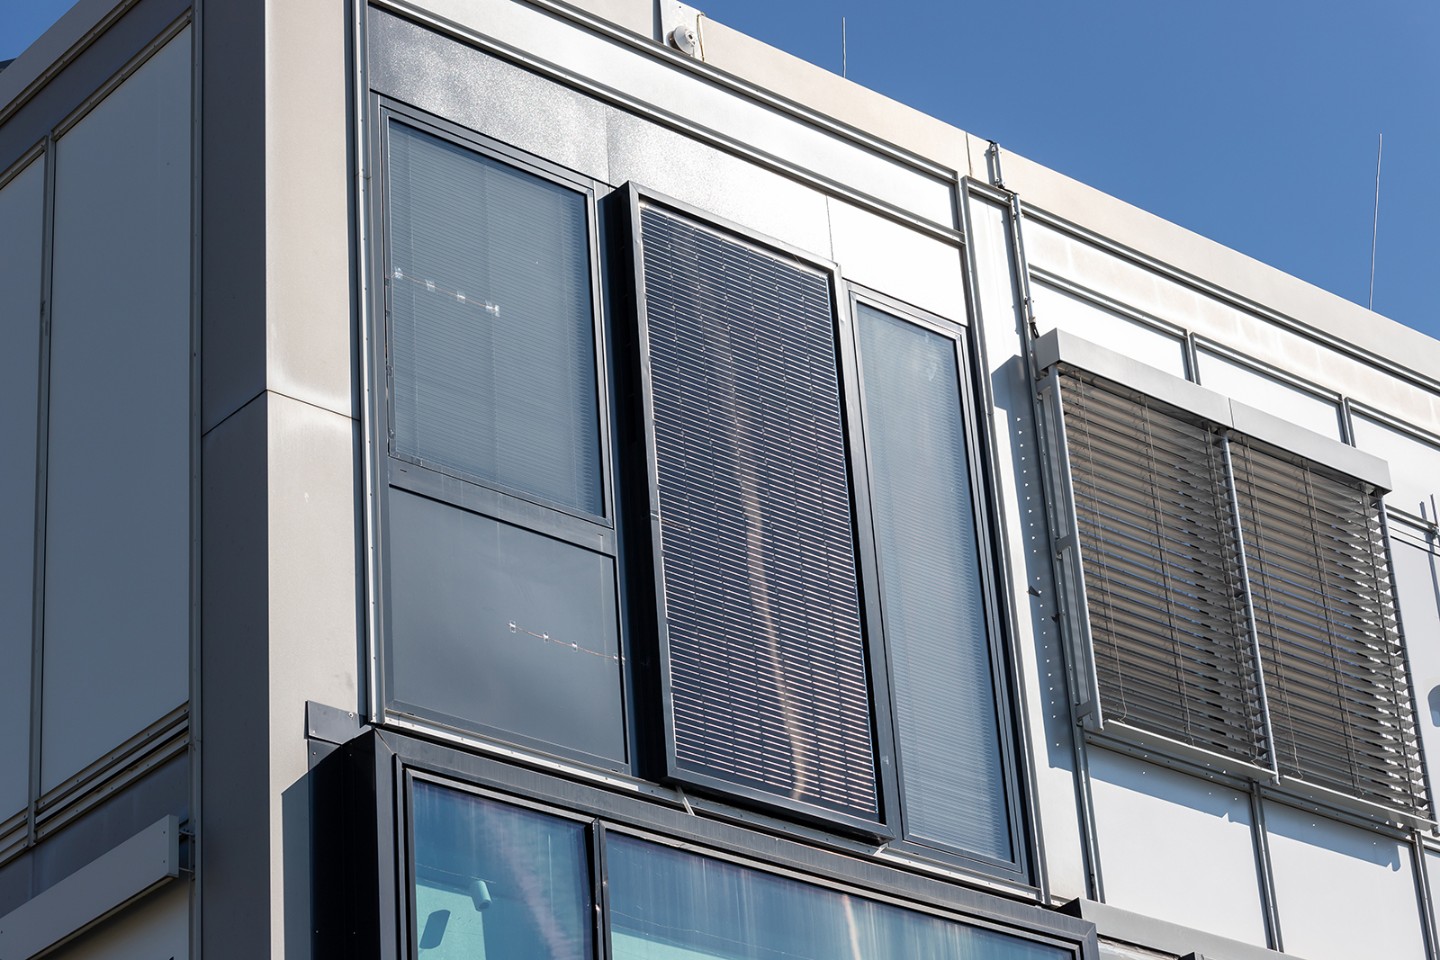 A modular facade supplies buildings with renewable energy